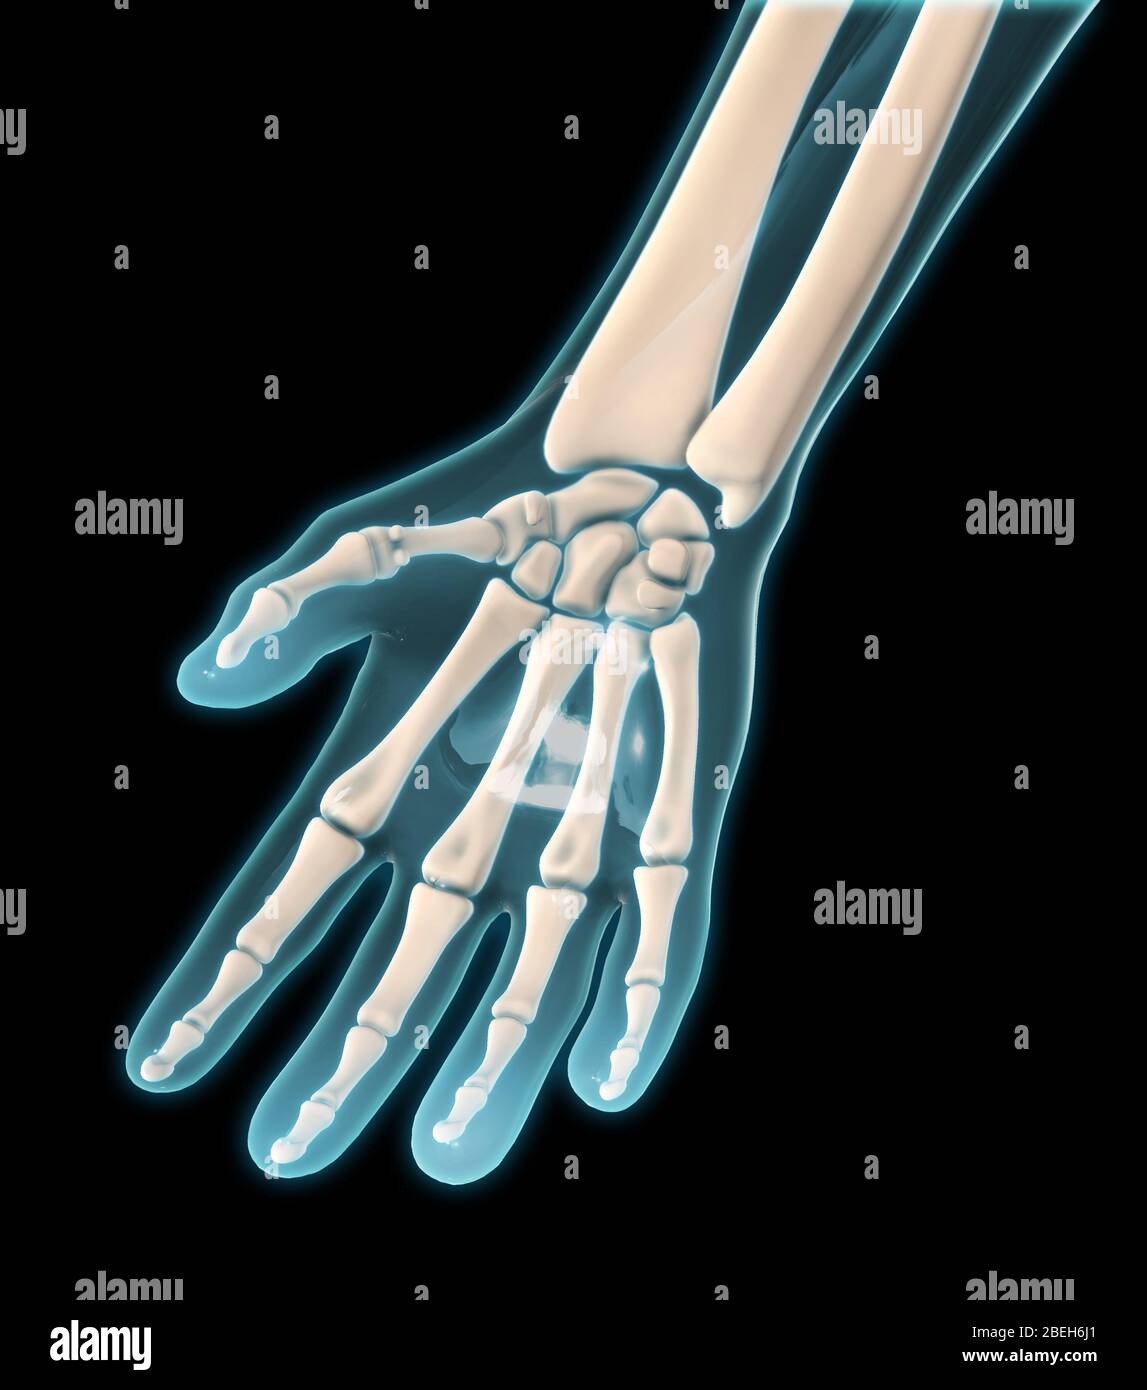 Eine palmarer Ansicht der Knochen der rechten Hand. Stockfoto